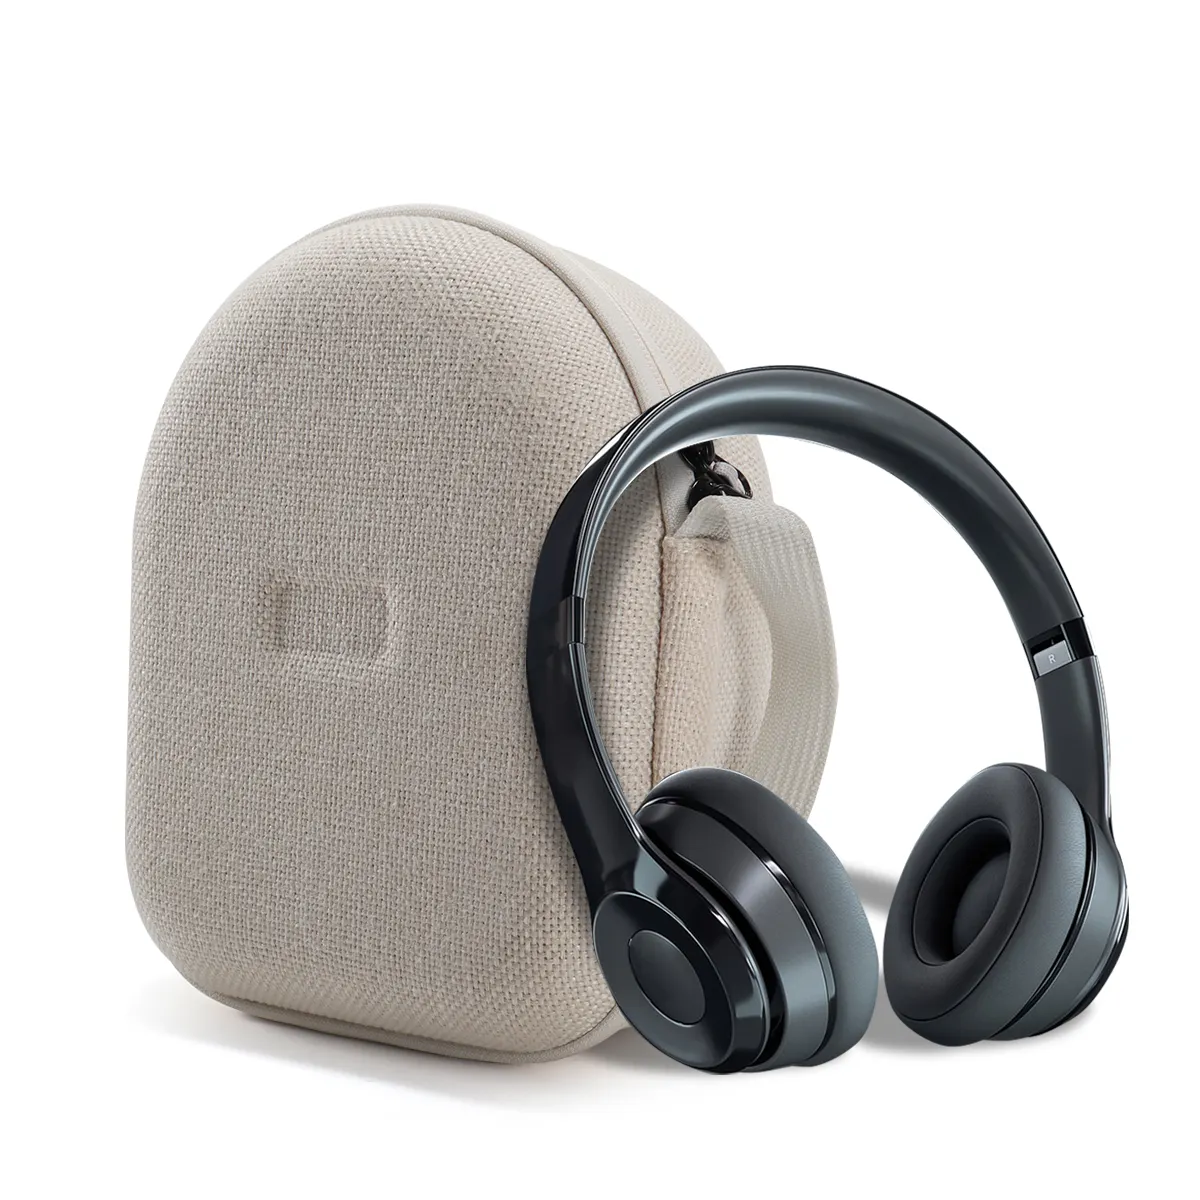 지퍼 이어폰 데이터 케이블 헤드셋 나일론 하드 케이스 가방 및 액세서리가있는 맞춤형 무선 헤드폰 EVA 케이스